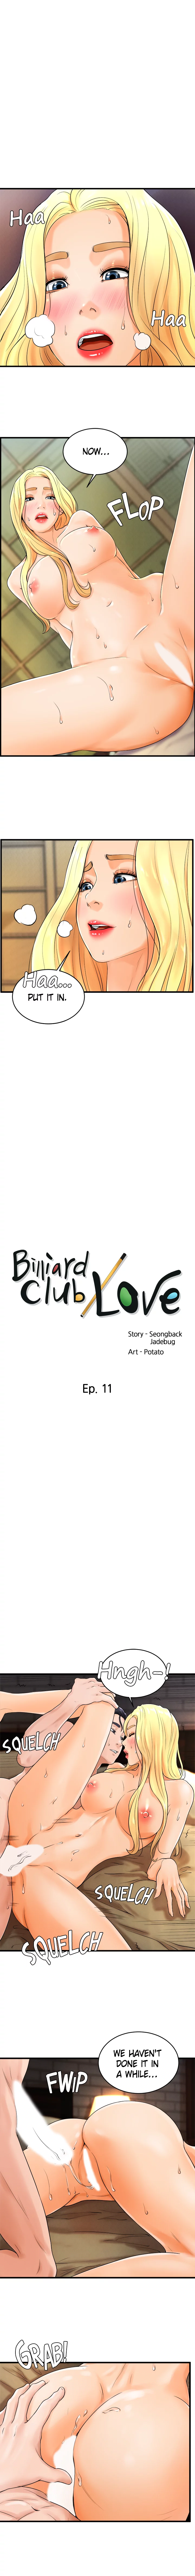 The image Billiard Club Love - Chapter 11 - 10197e6290a9b65fda0 - ManhwaManga.io